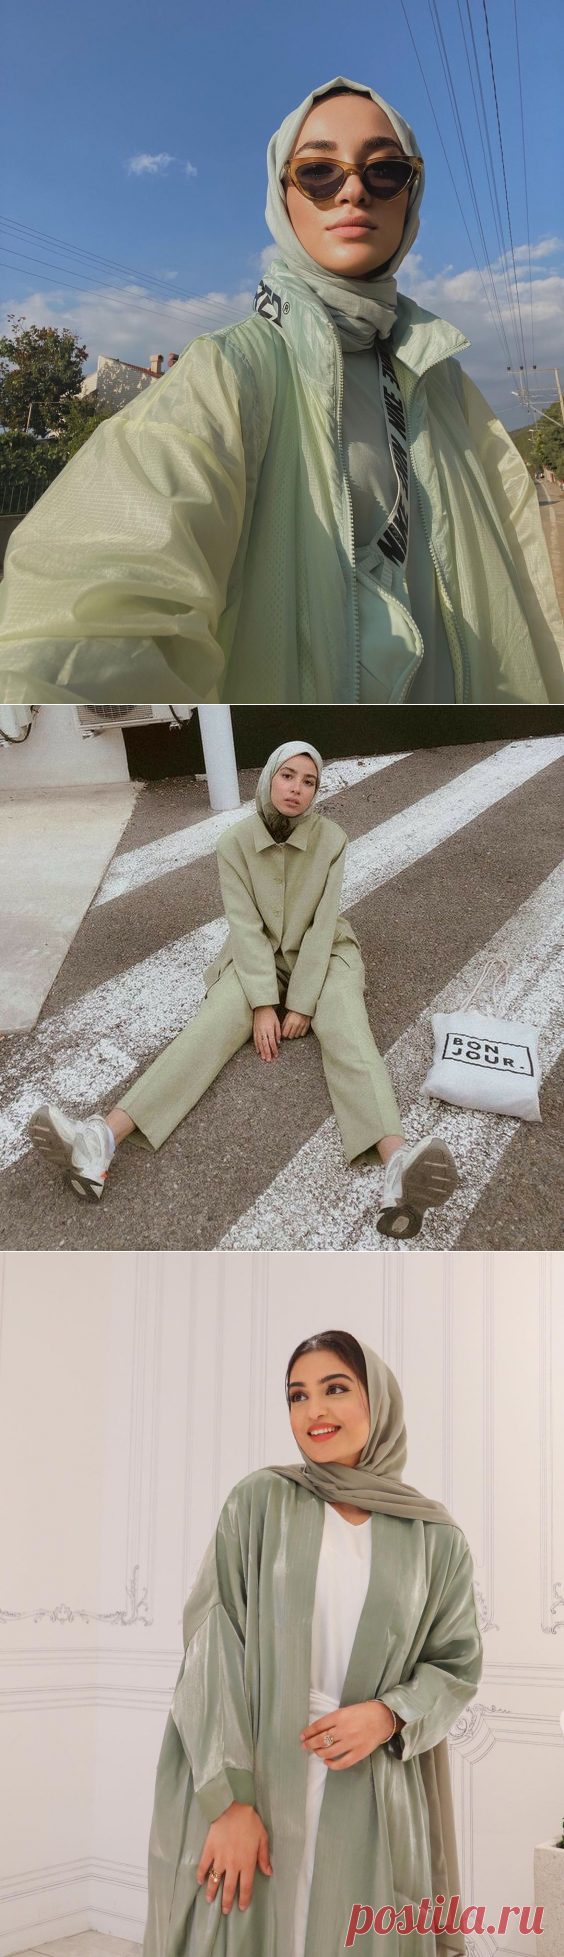 2020 Hijab Trend: Matcha Outfit Style Ideas - Hijab-style.com